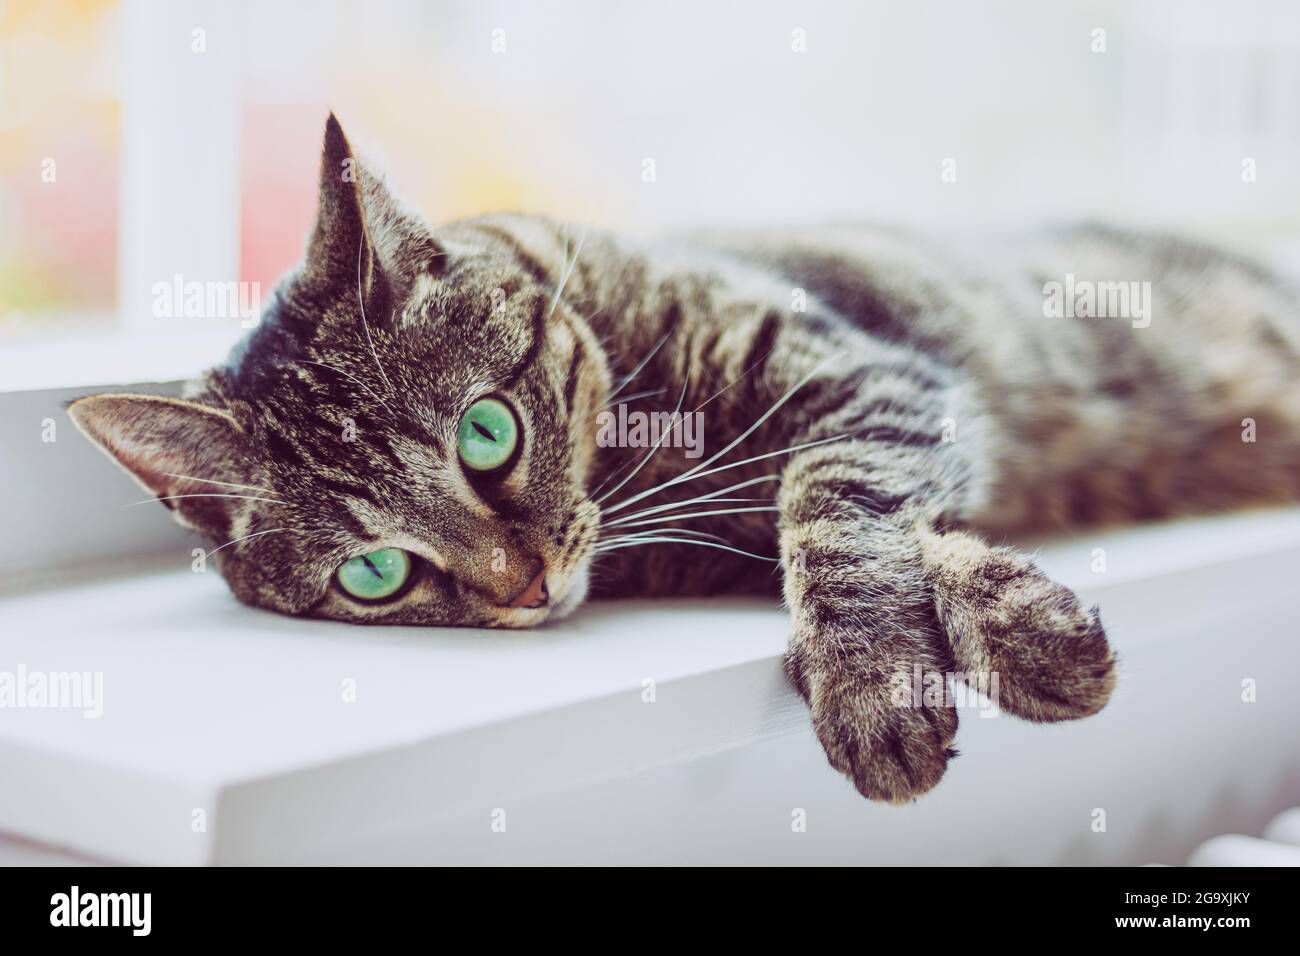 Niedliche tabby Katze mit grünen Augen liegt auf weißem Fensterbrett. Stockfoto